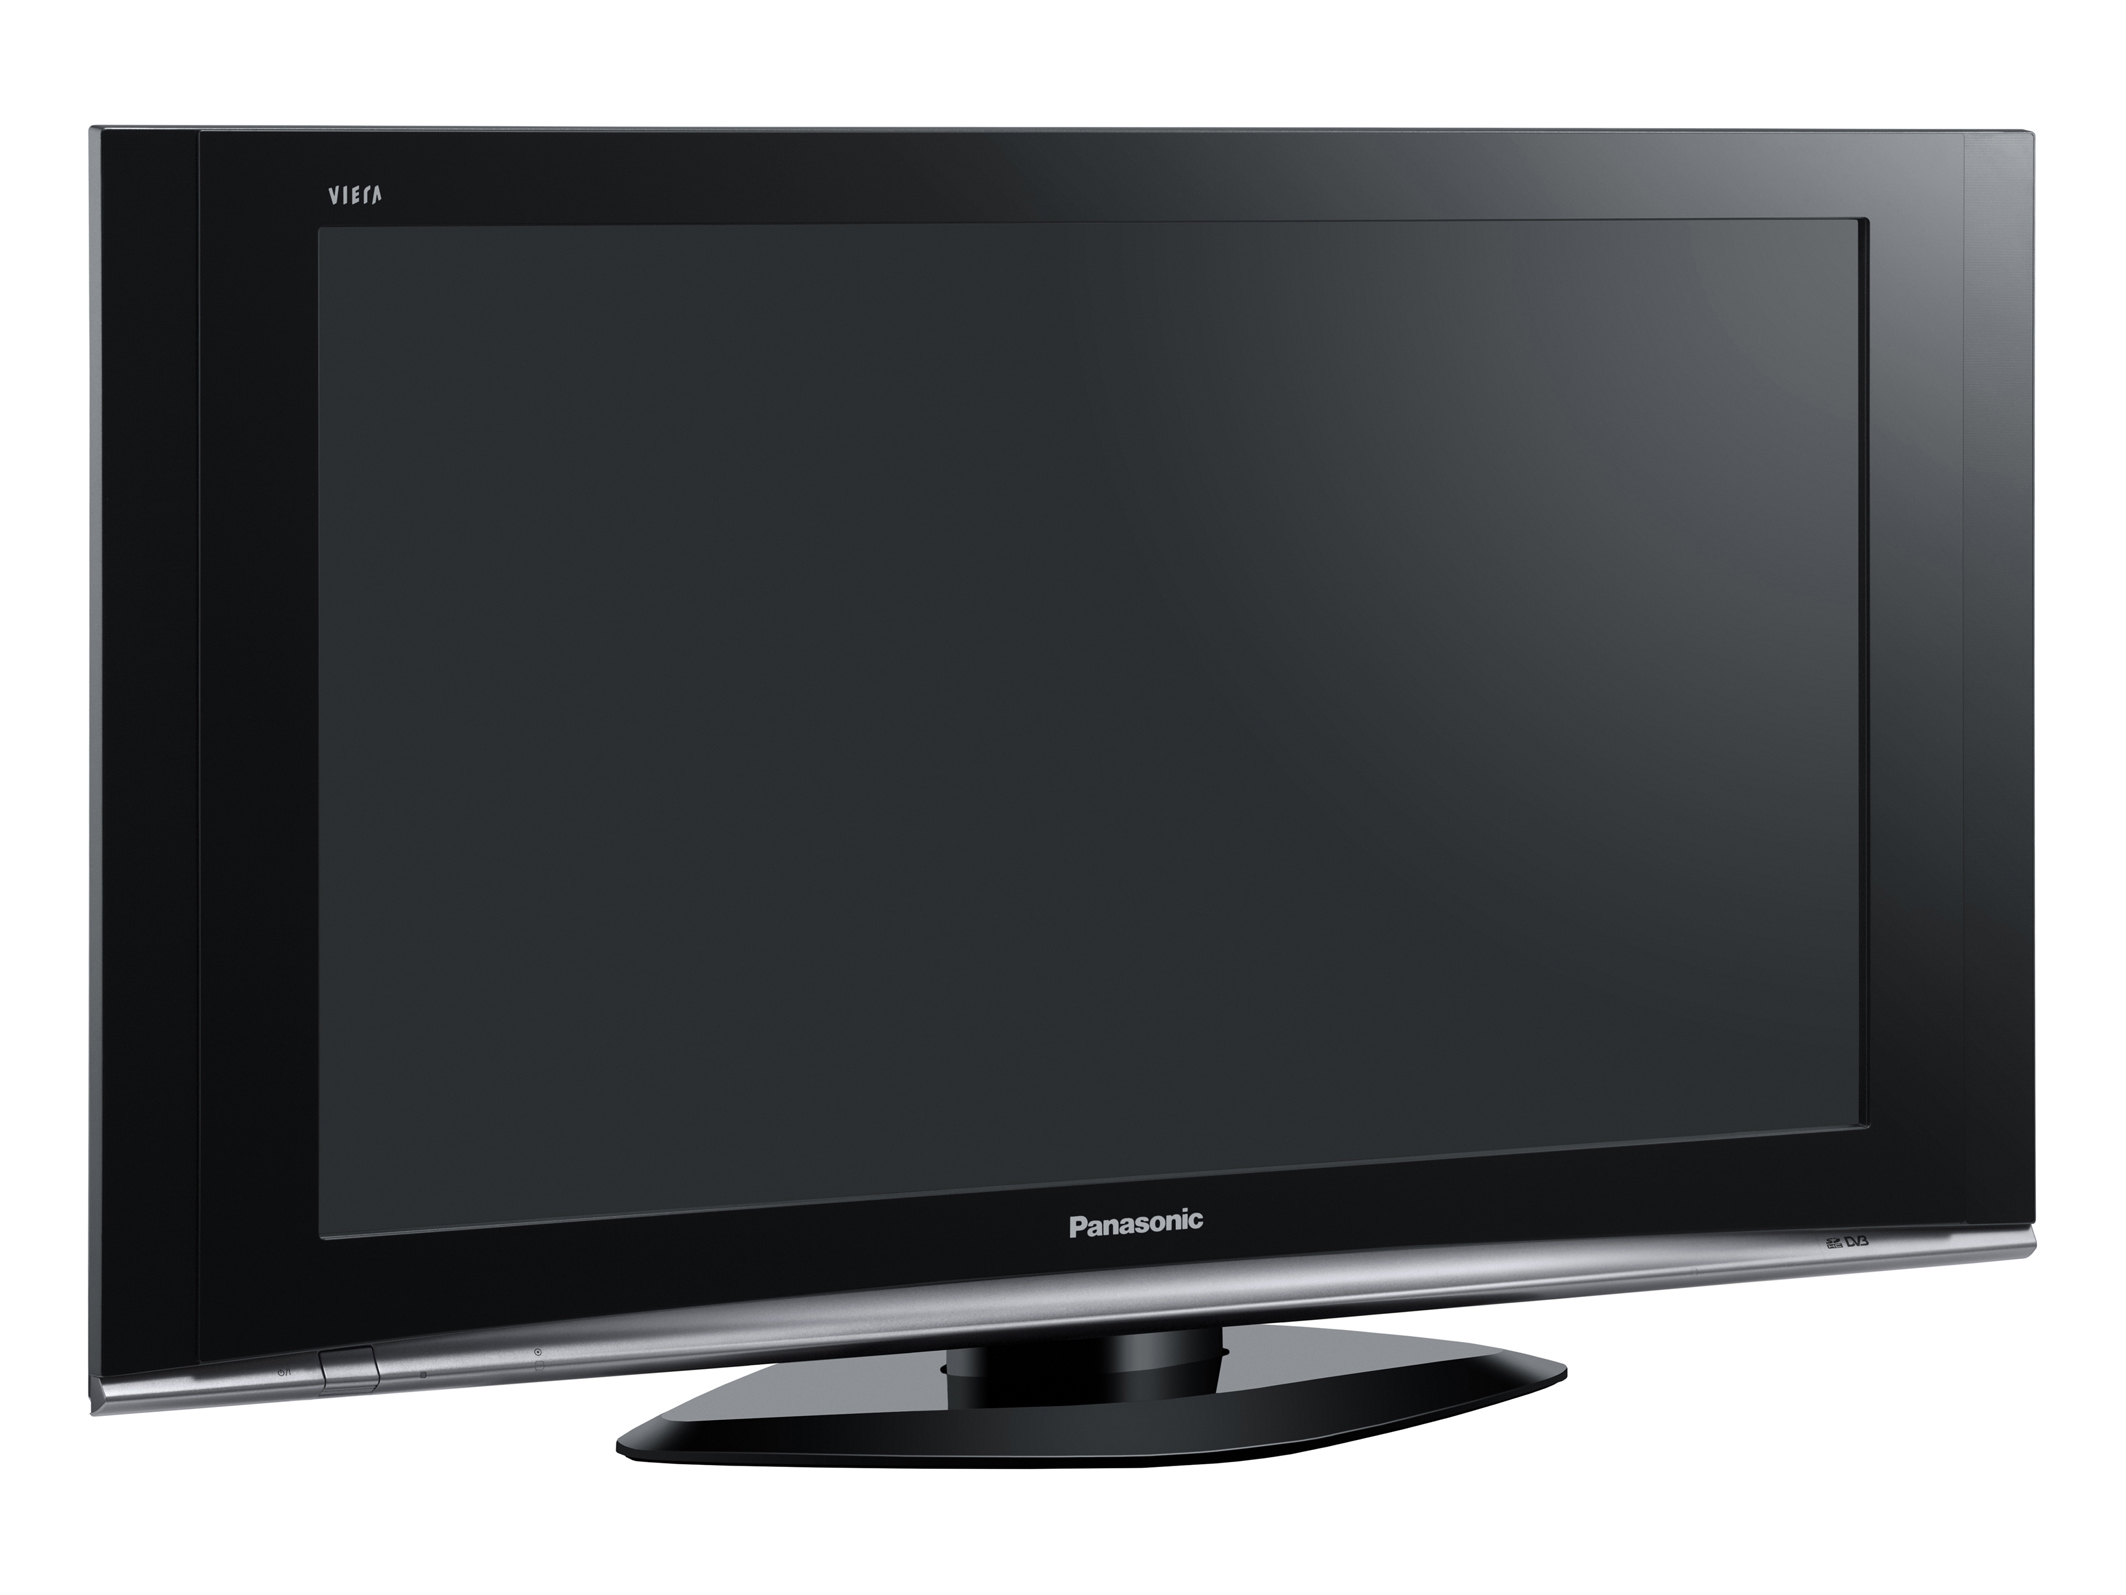 Panasonic VIERA 37型ビエラPX60 プラズマテレビ 綺麗 - プラズマテレビ